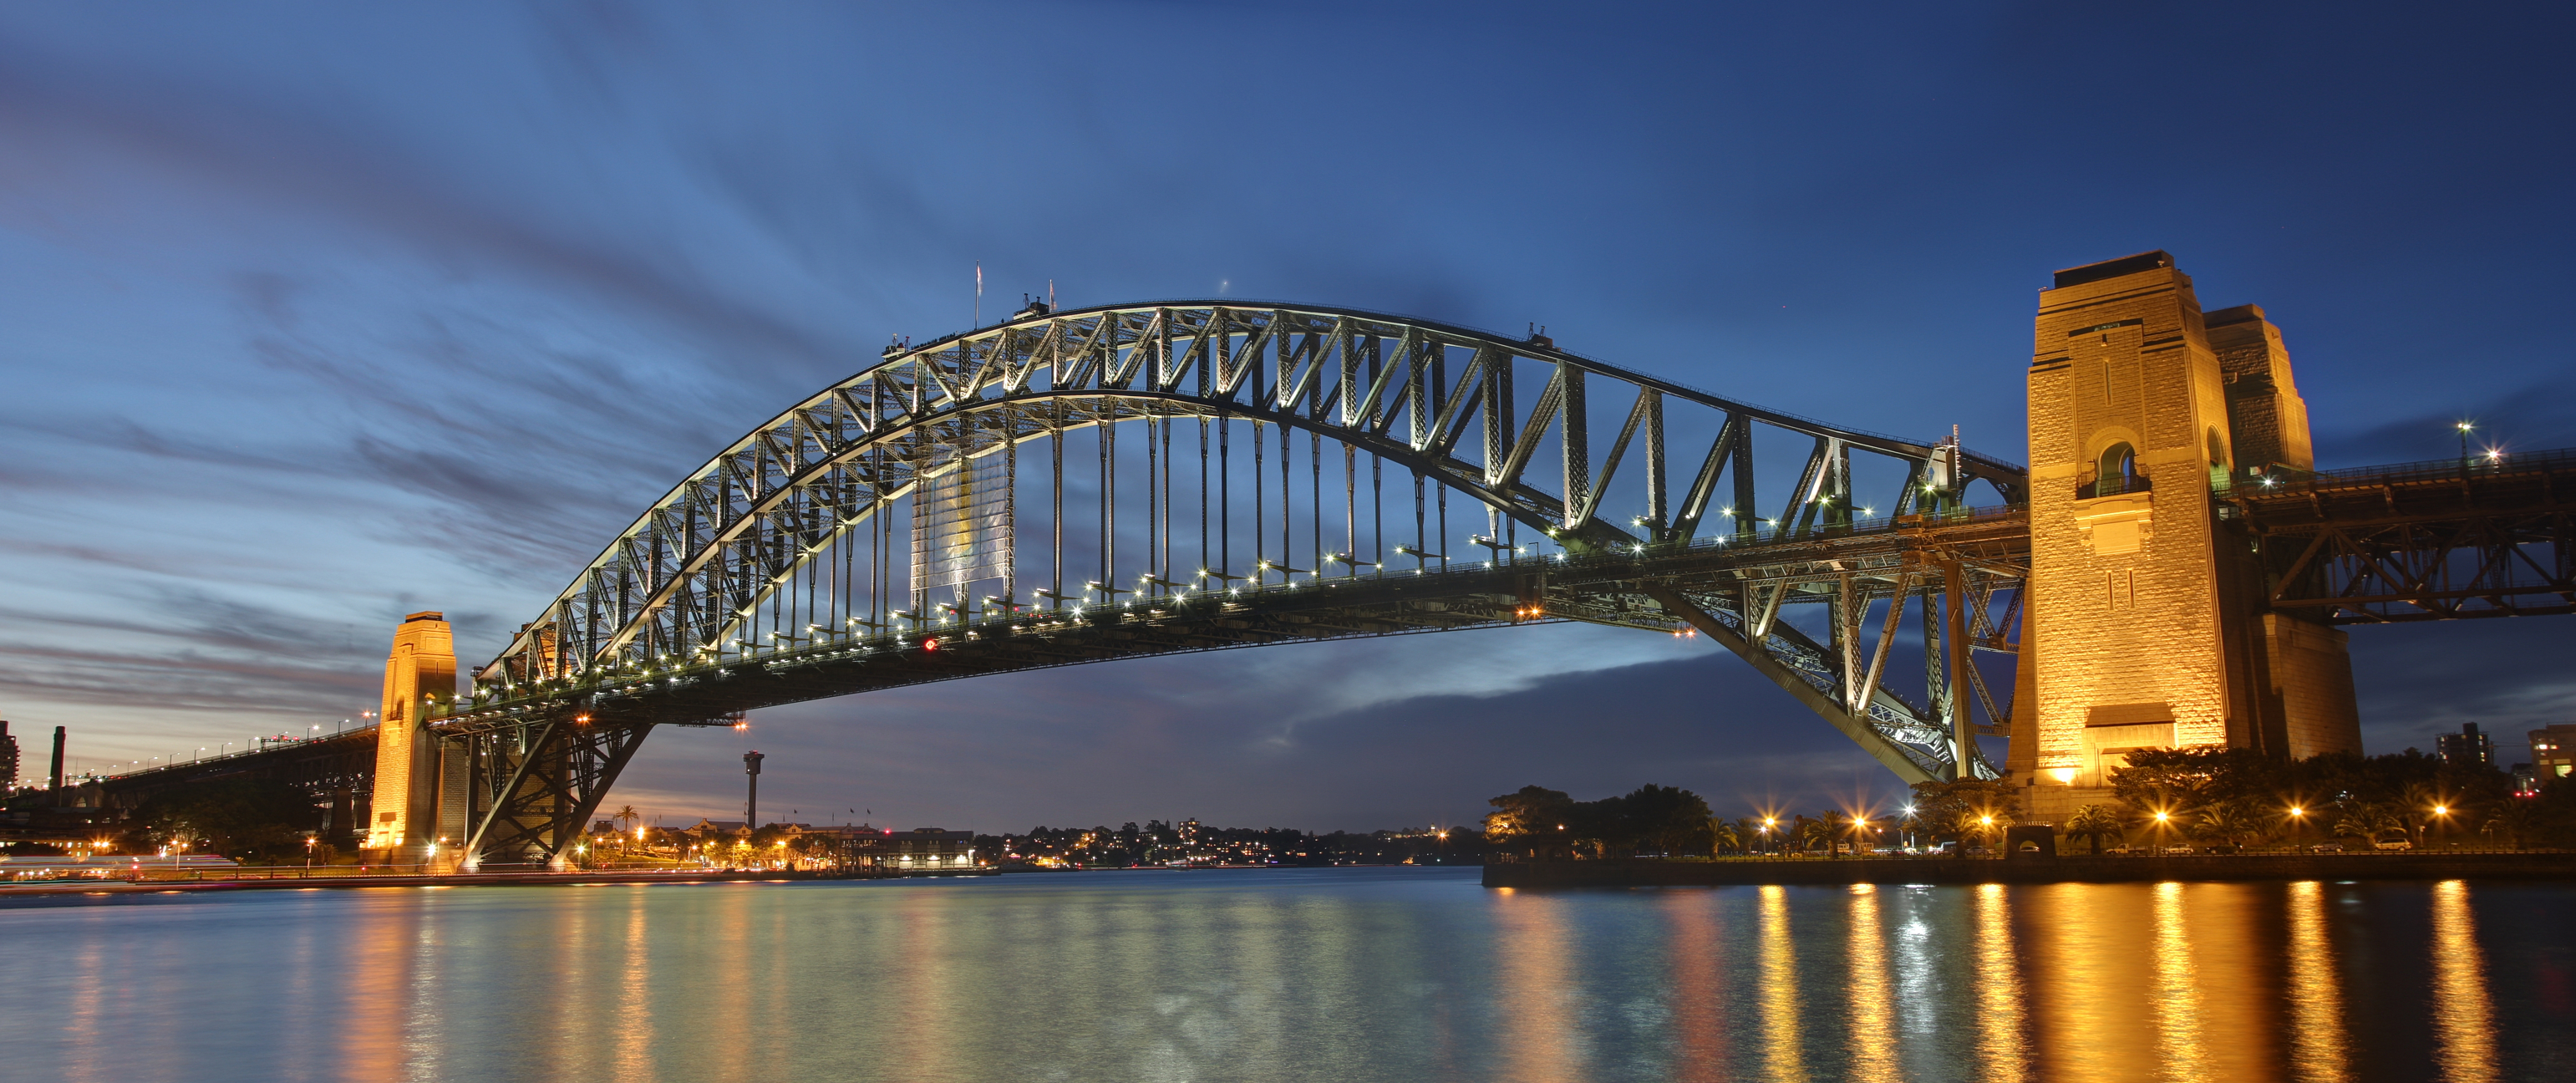 File:Sydney harbour bridge dusk.jpg - Wikimedia Commons